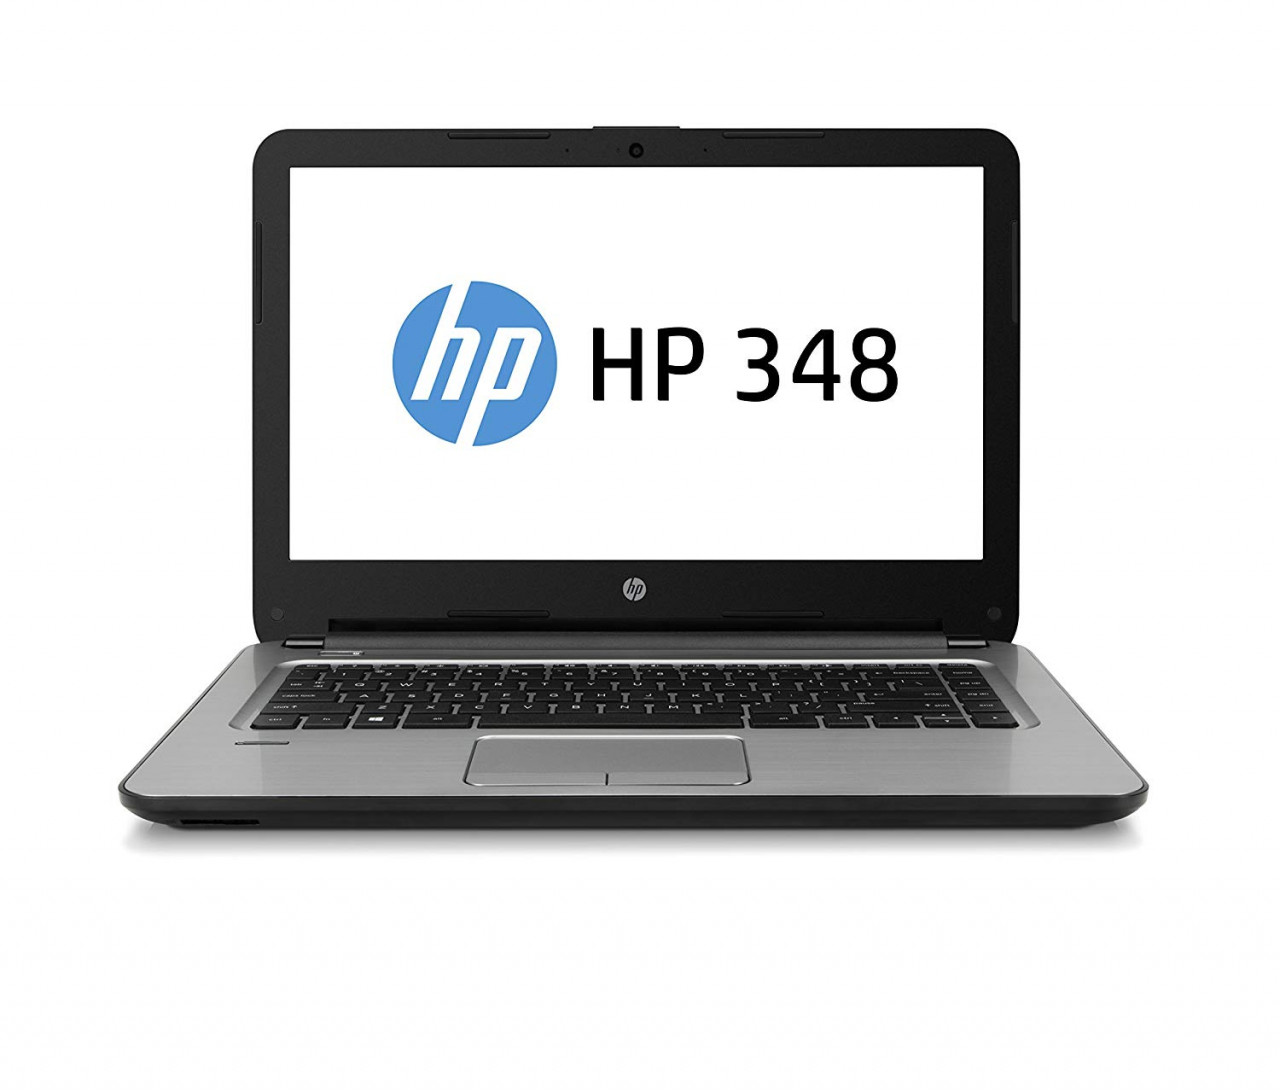 HP 348